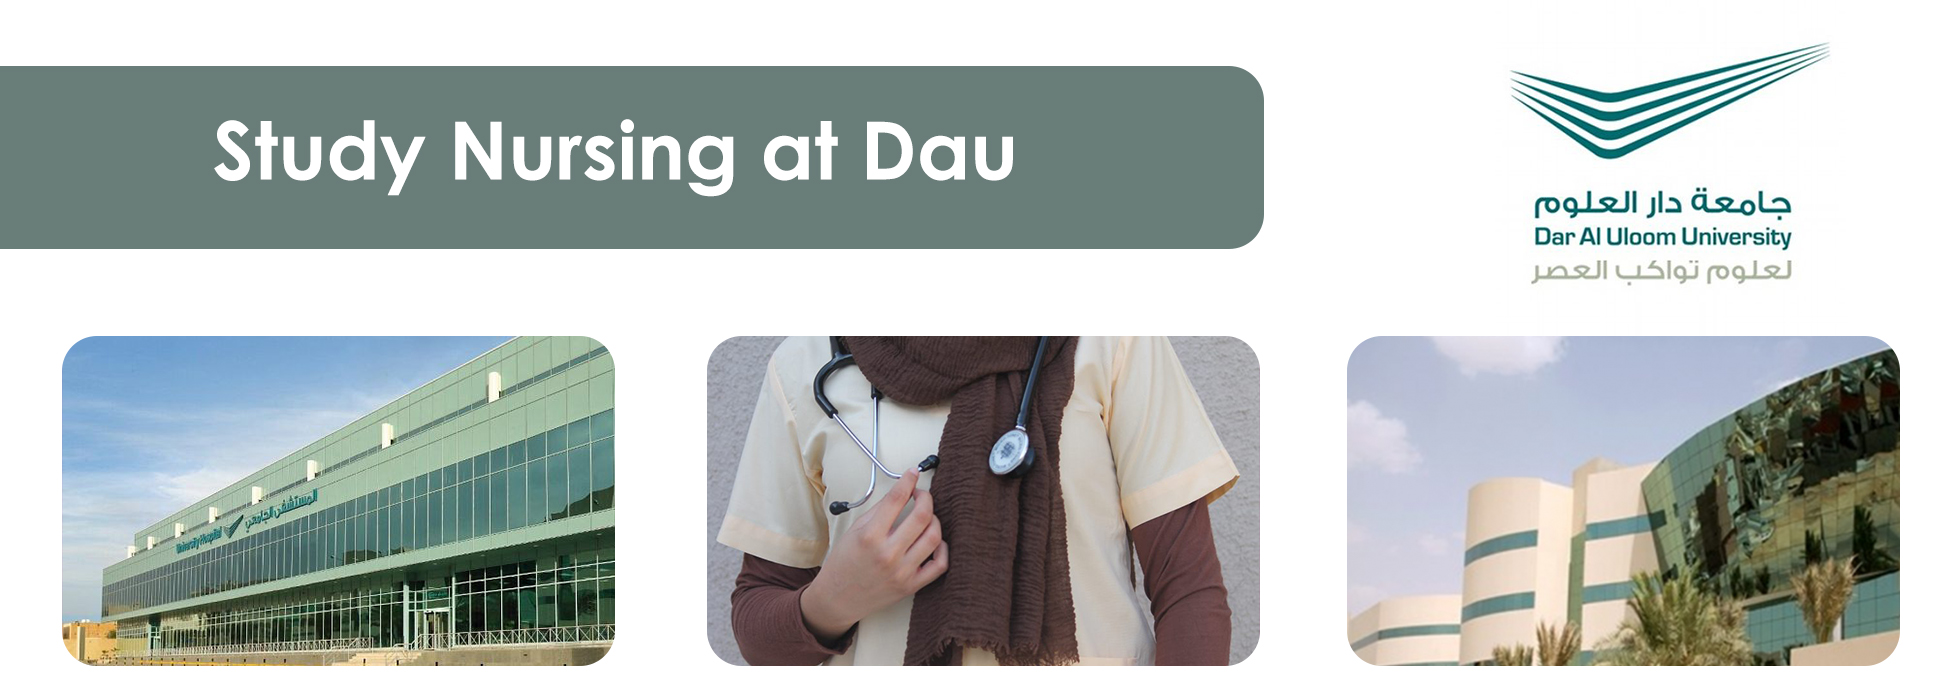 Study Nursing at Dau